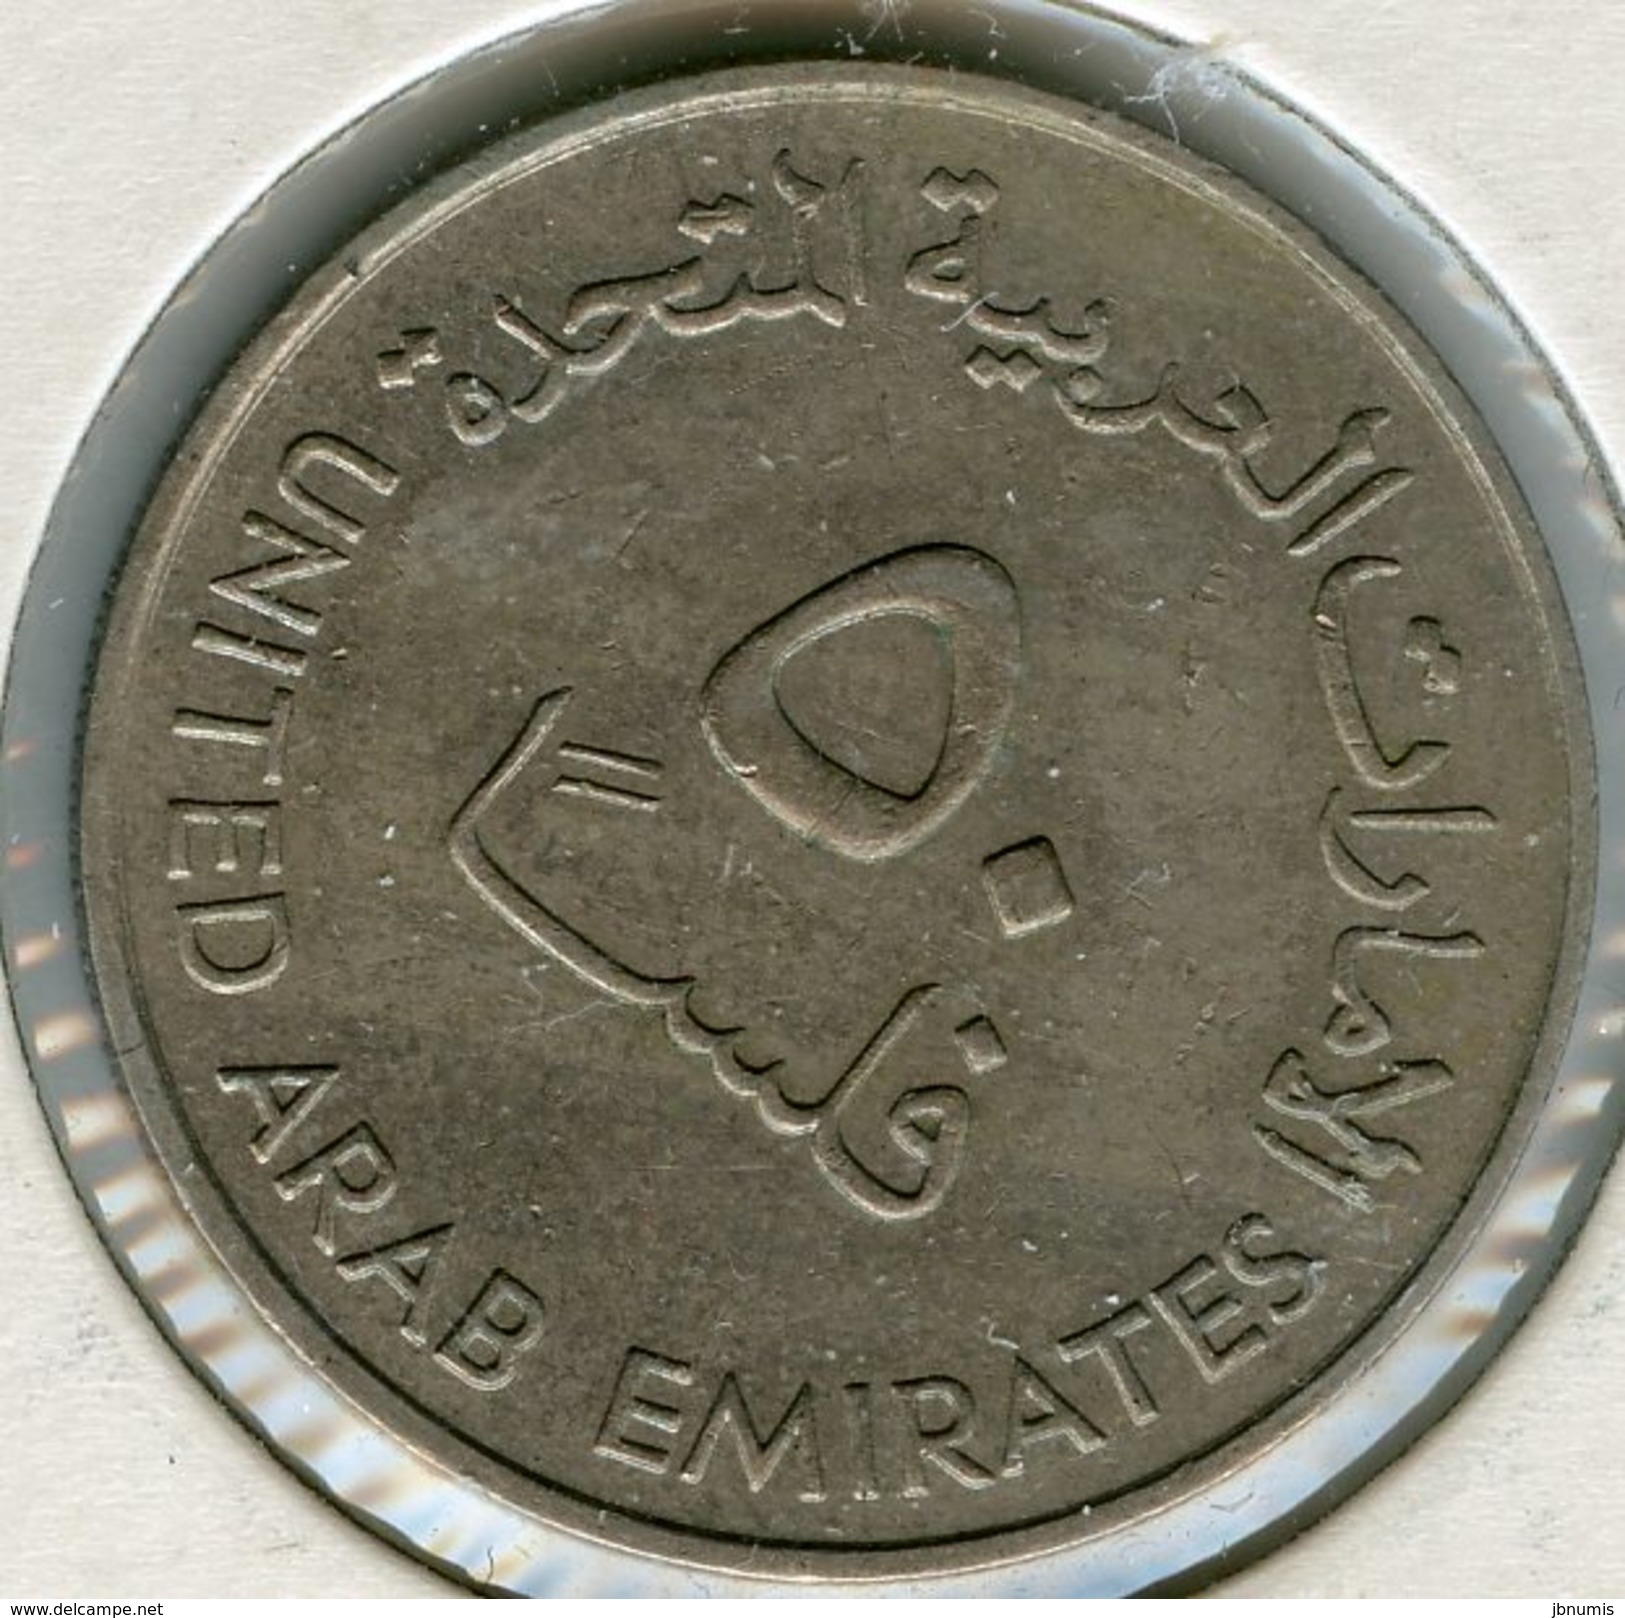 Emirats Arabes Unis United Arab Emirates 50 Fils 1402 - 1982 KM 5 - Emirats Arabes Unis